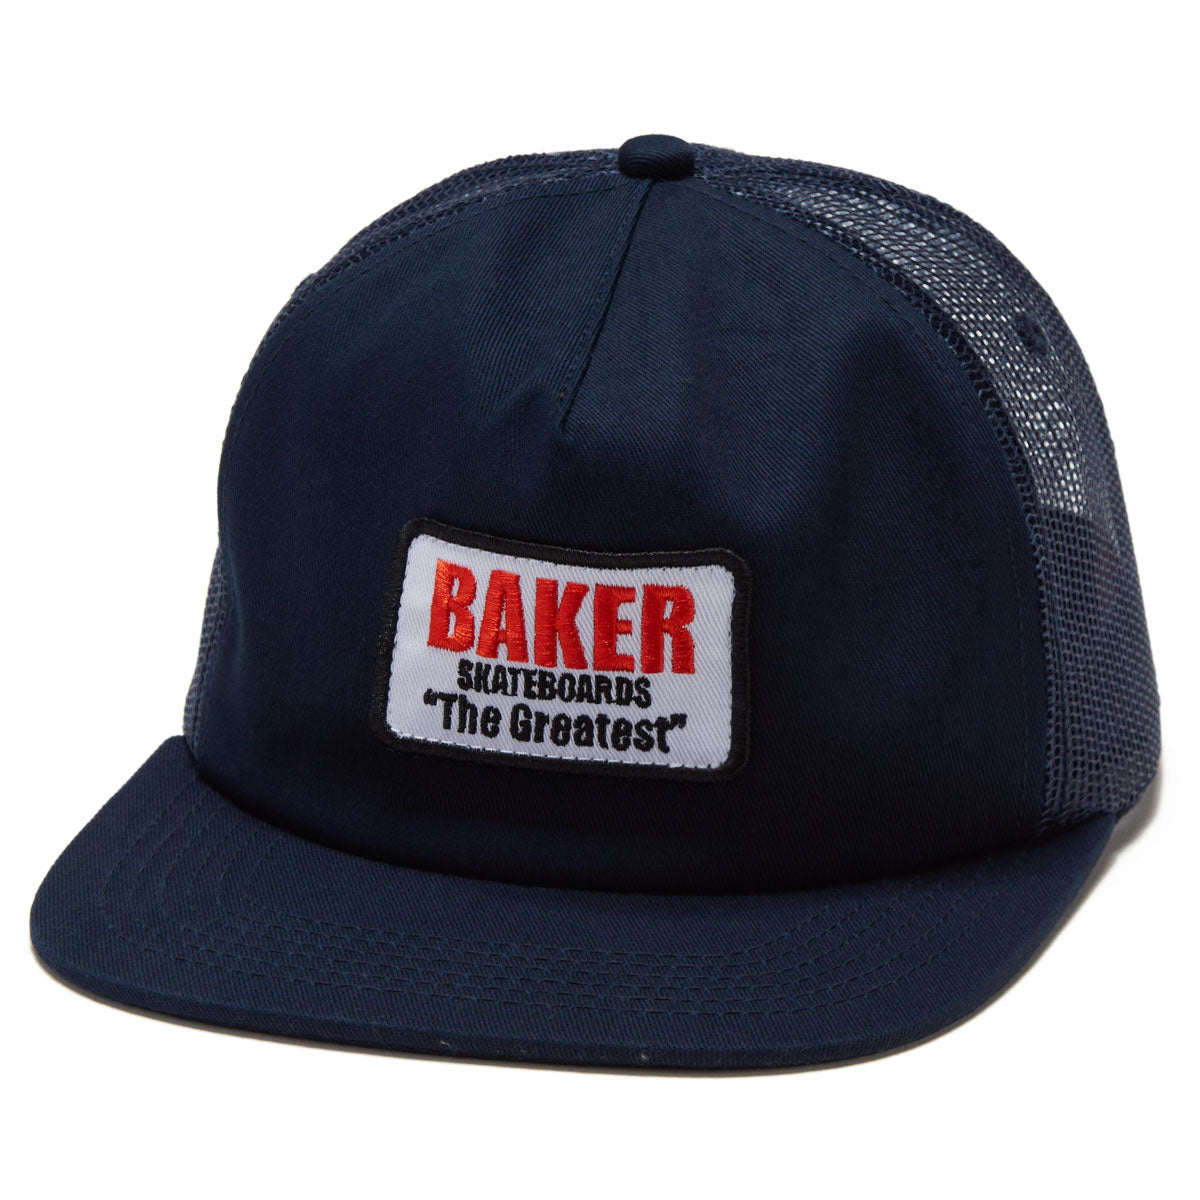 Baker The Greatest Trucker Hat - Navy image 1